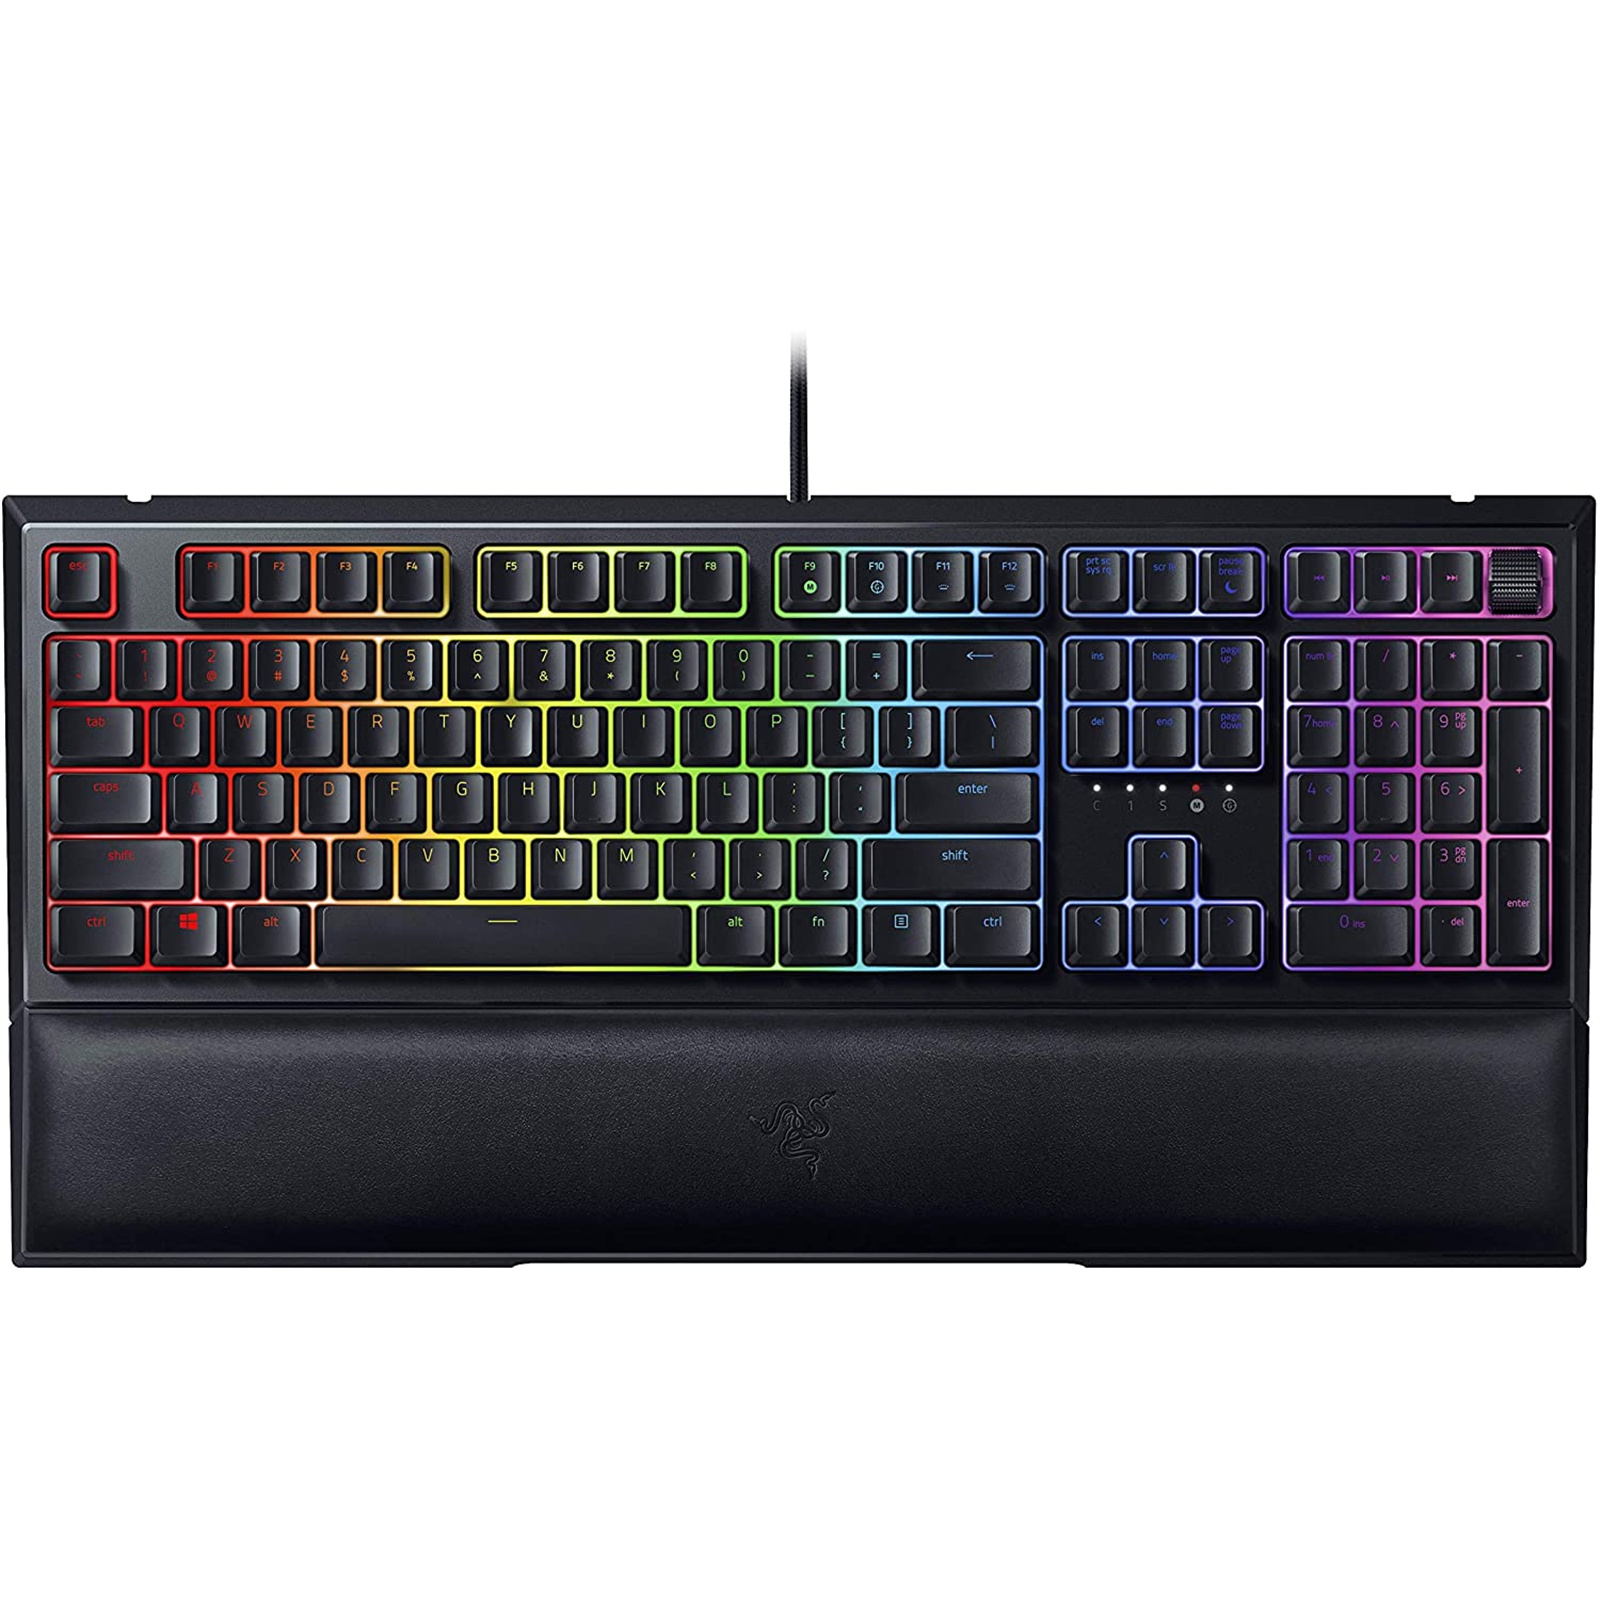 Buy the Razer Ornata V2 Chroma RGB Gaming Keyboard Mecha-Membrane Keys -...  ( RZ03-03380100-R3M1 ) online - PBTech.com/au